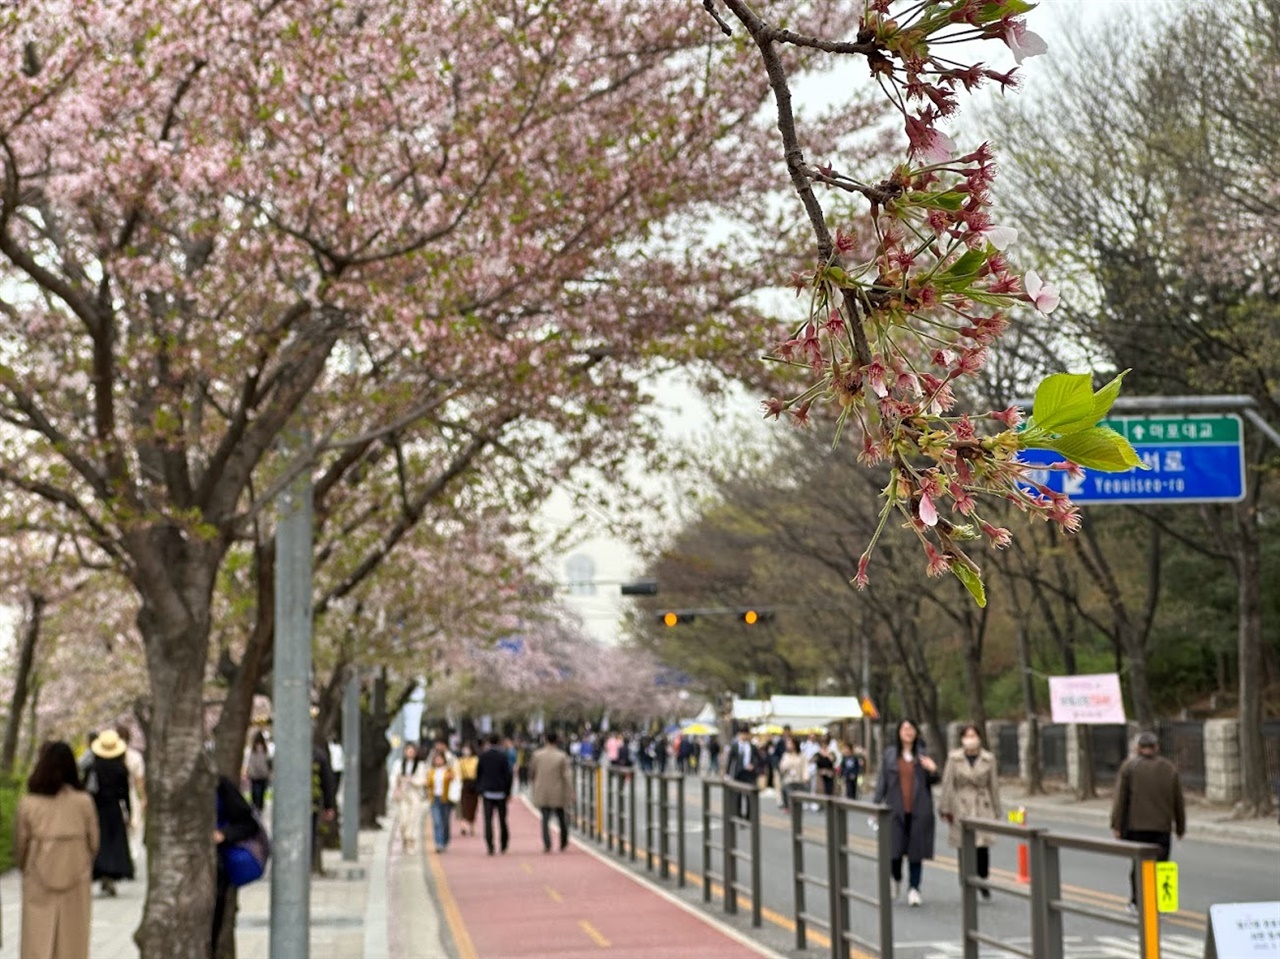 벚꽃축제 첫 날인 4월 4일, 차량이 통제되고 인파가 몰렸지만, 벚꽃은 절정을 지나 떨어지고 잎사귀가 난 후였다.